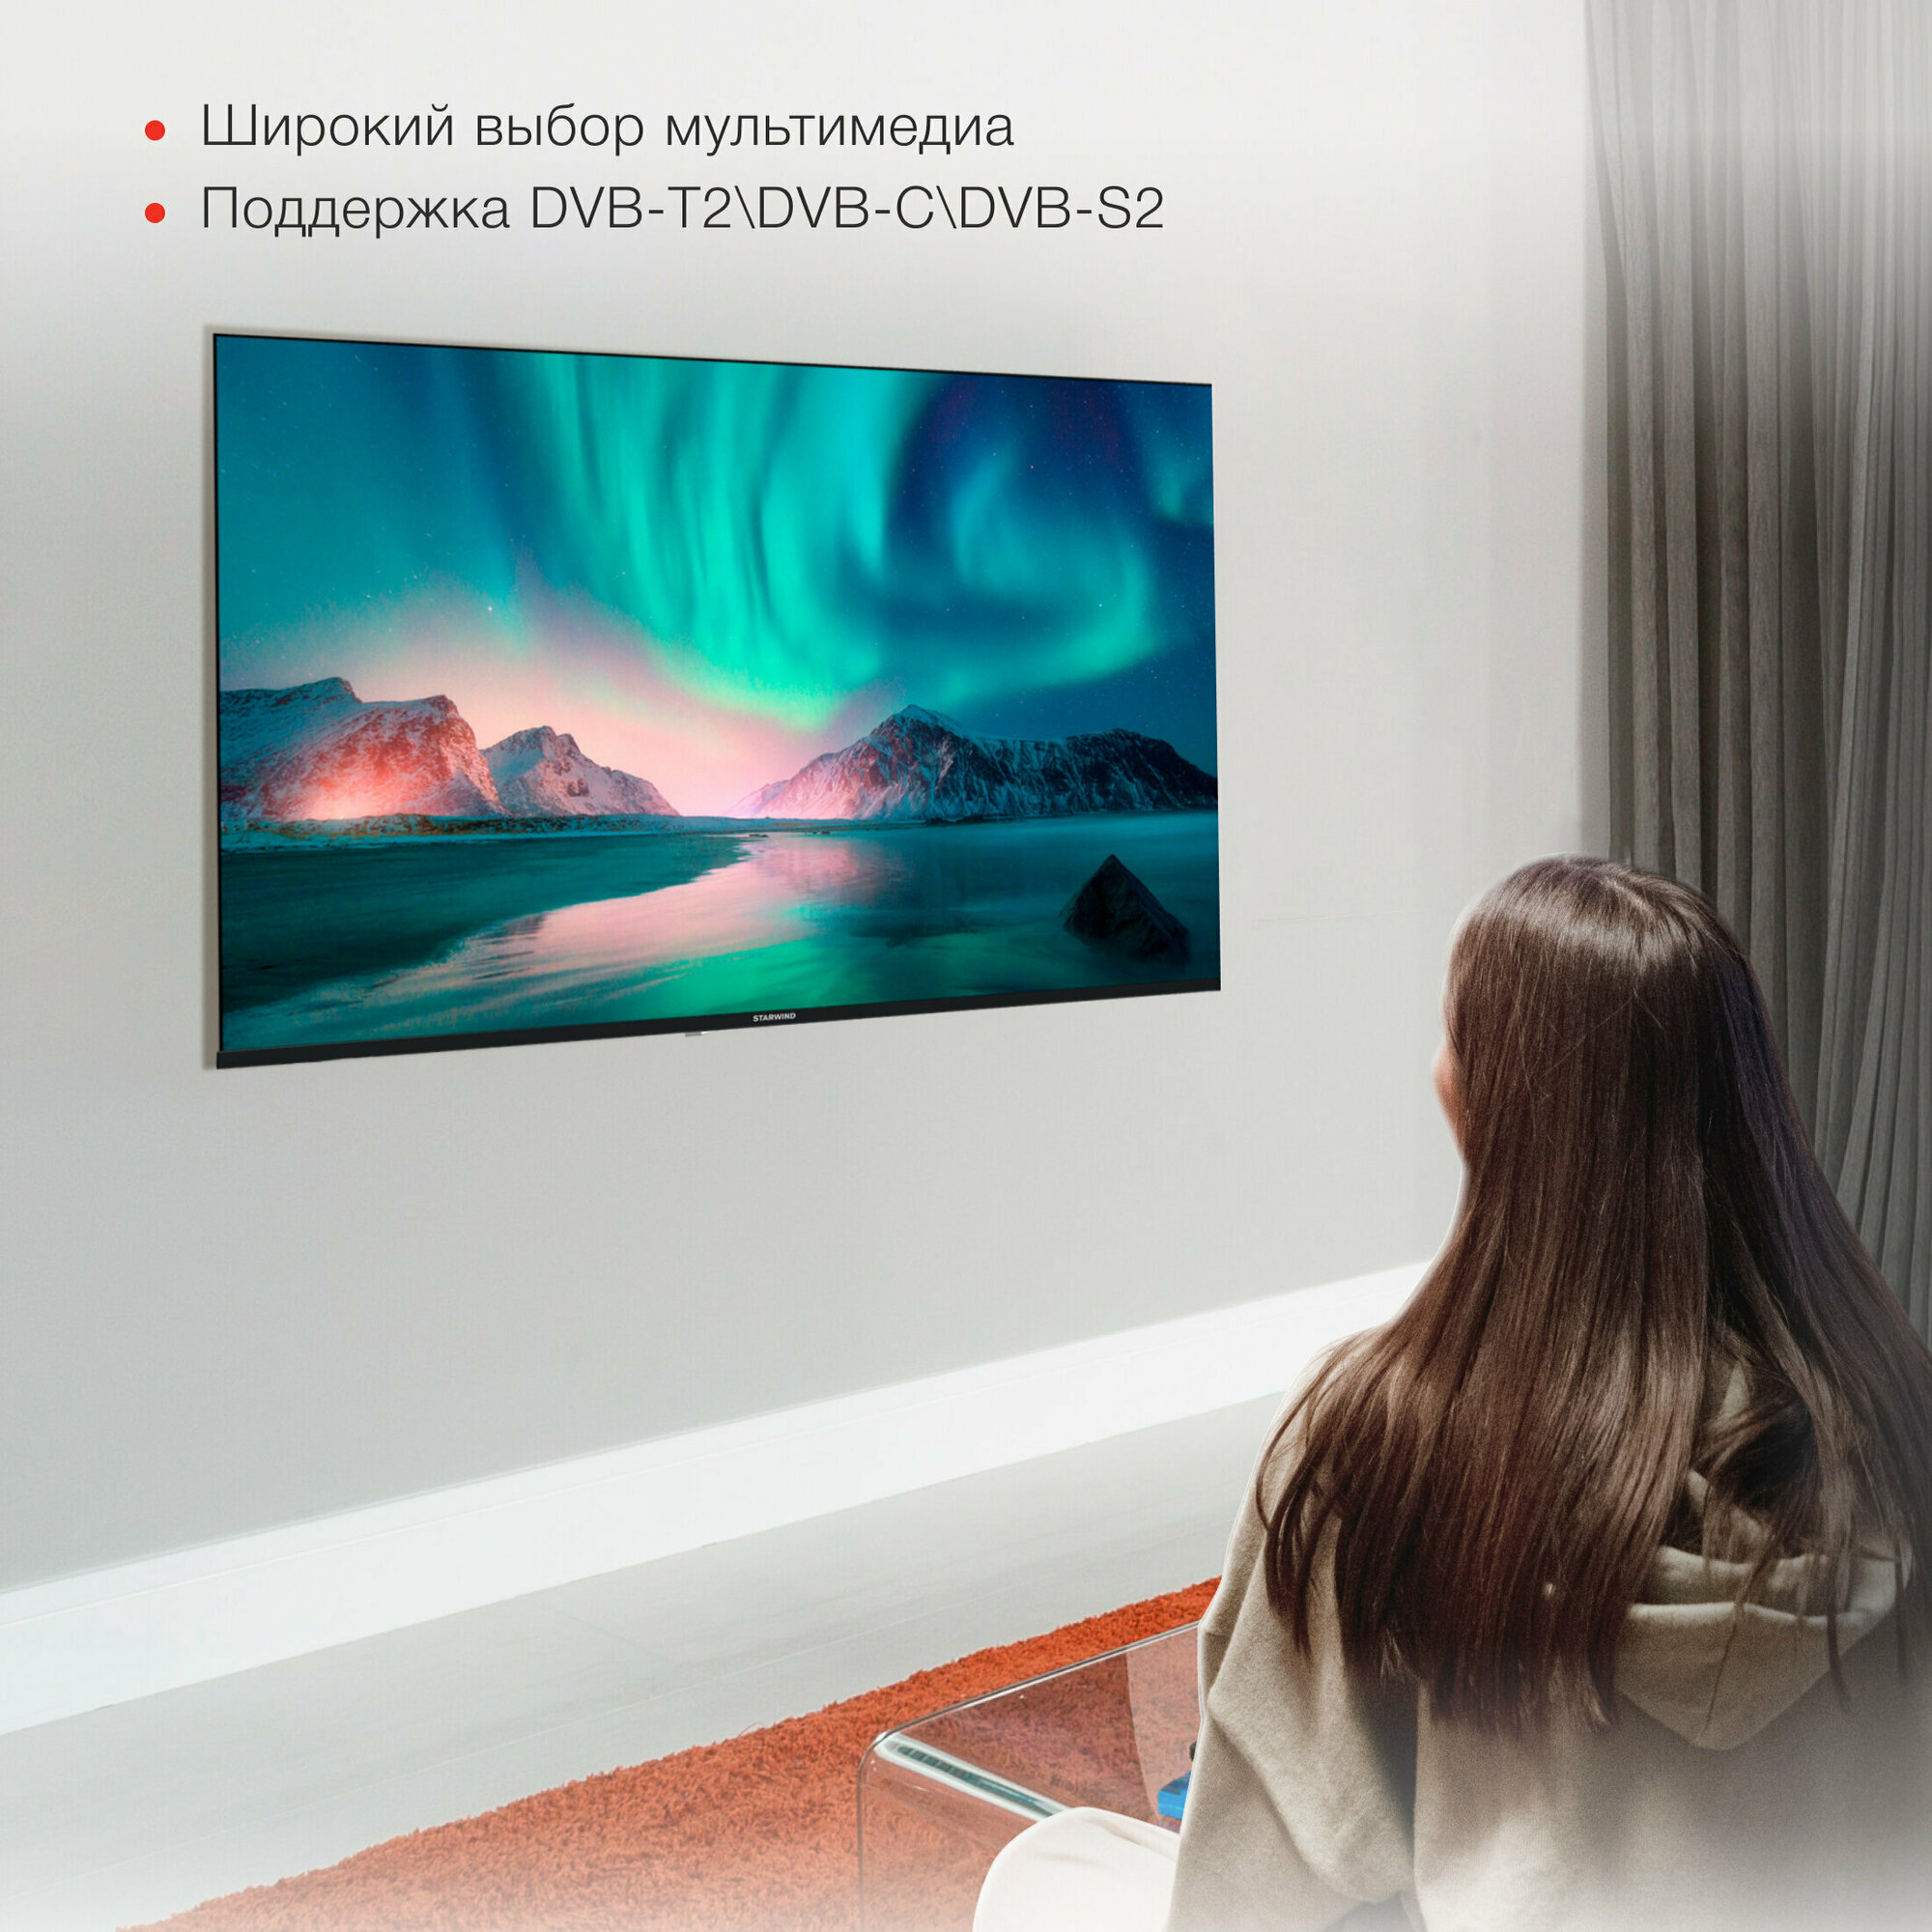 Телевизор Starwind Яндекс.ТВ SW-LED50UG403, 50", LED, 4K Ultra HD, Яндекс.ТВ, черный - фото №8